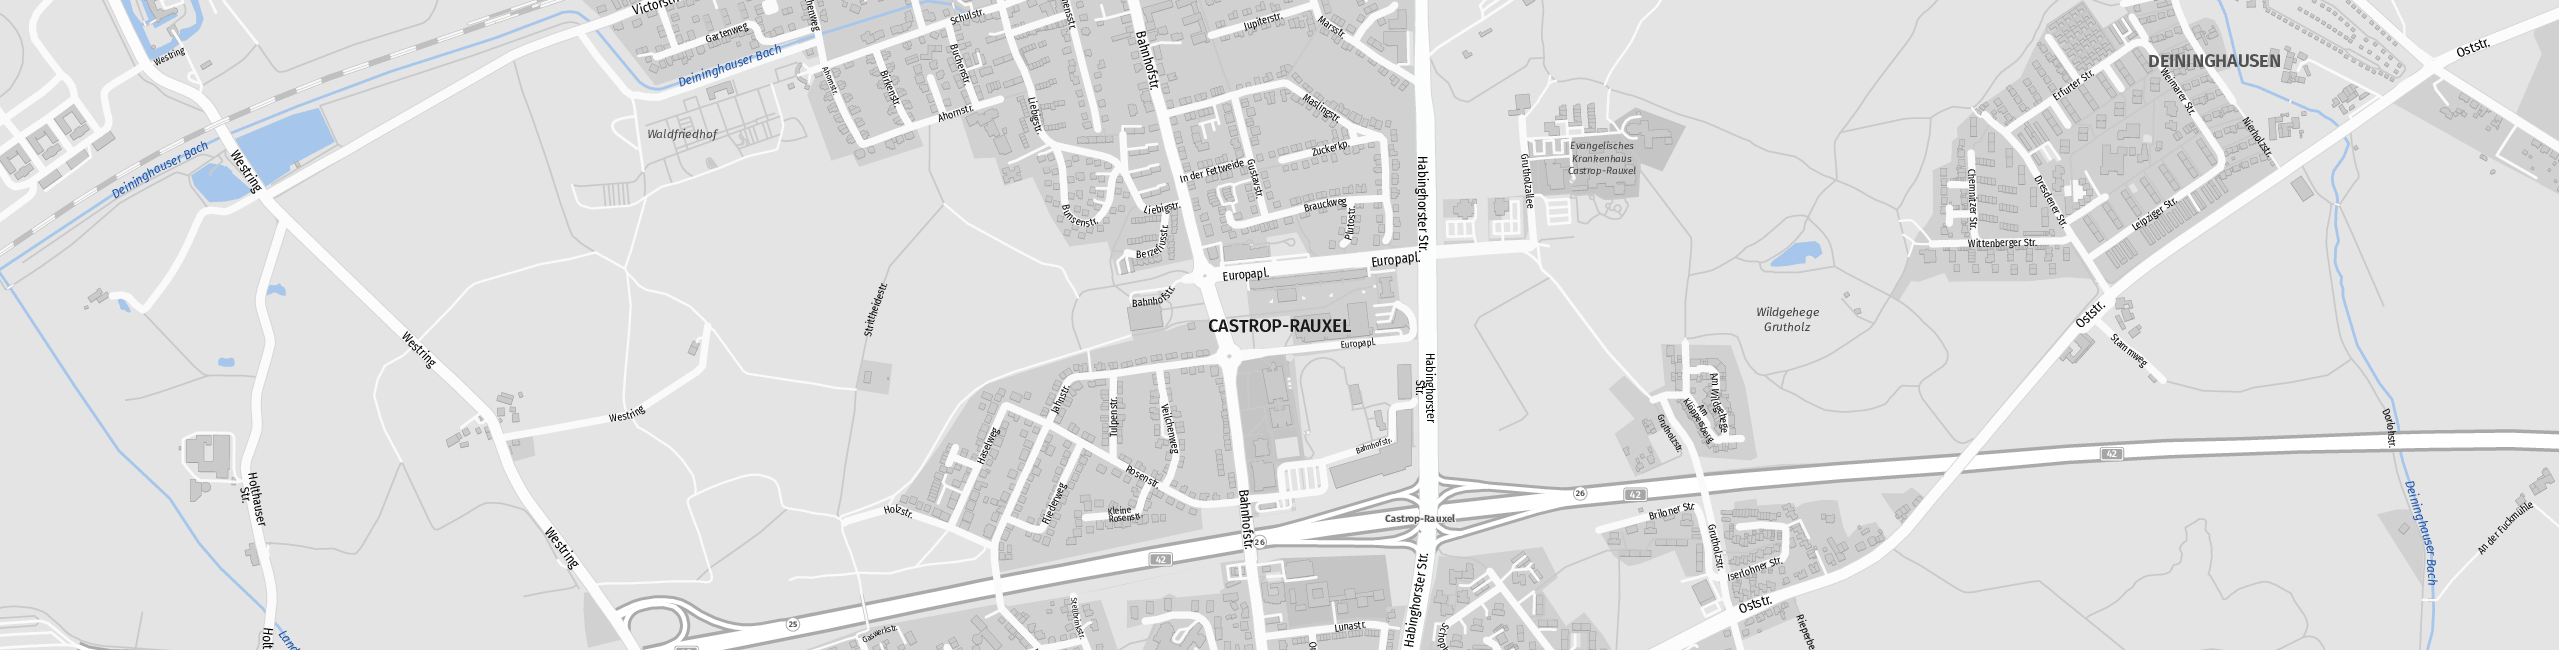 Stadtplan Castrop-Rauxel zum Downloaden.